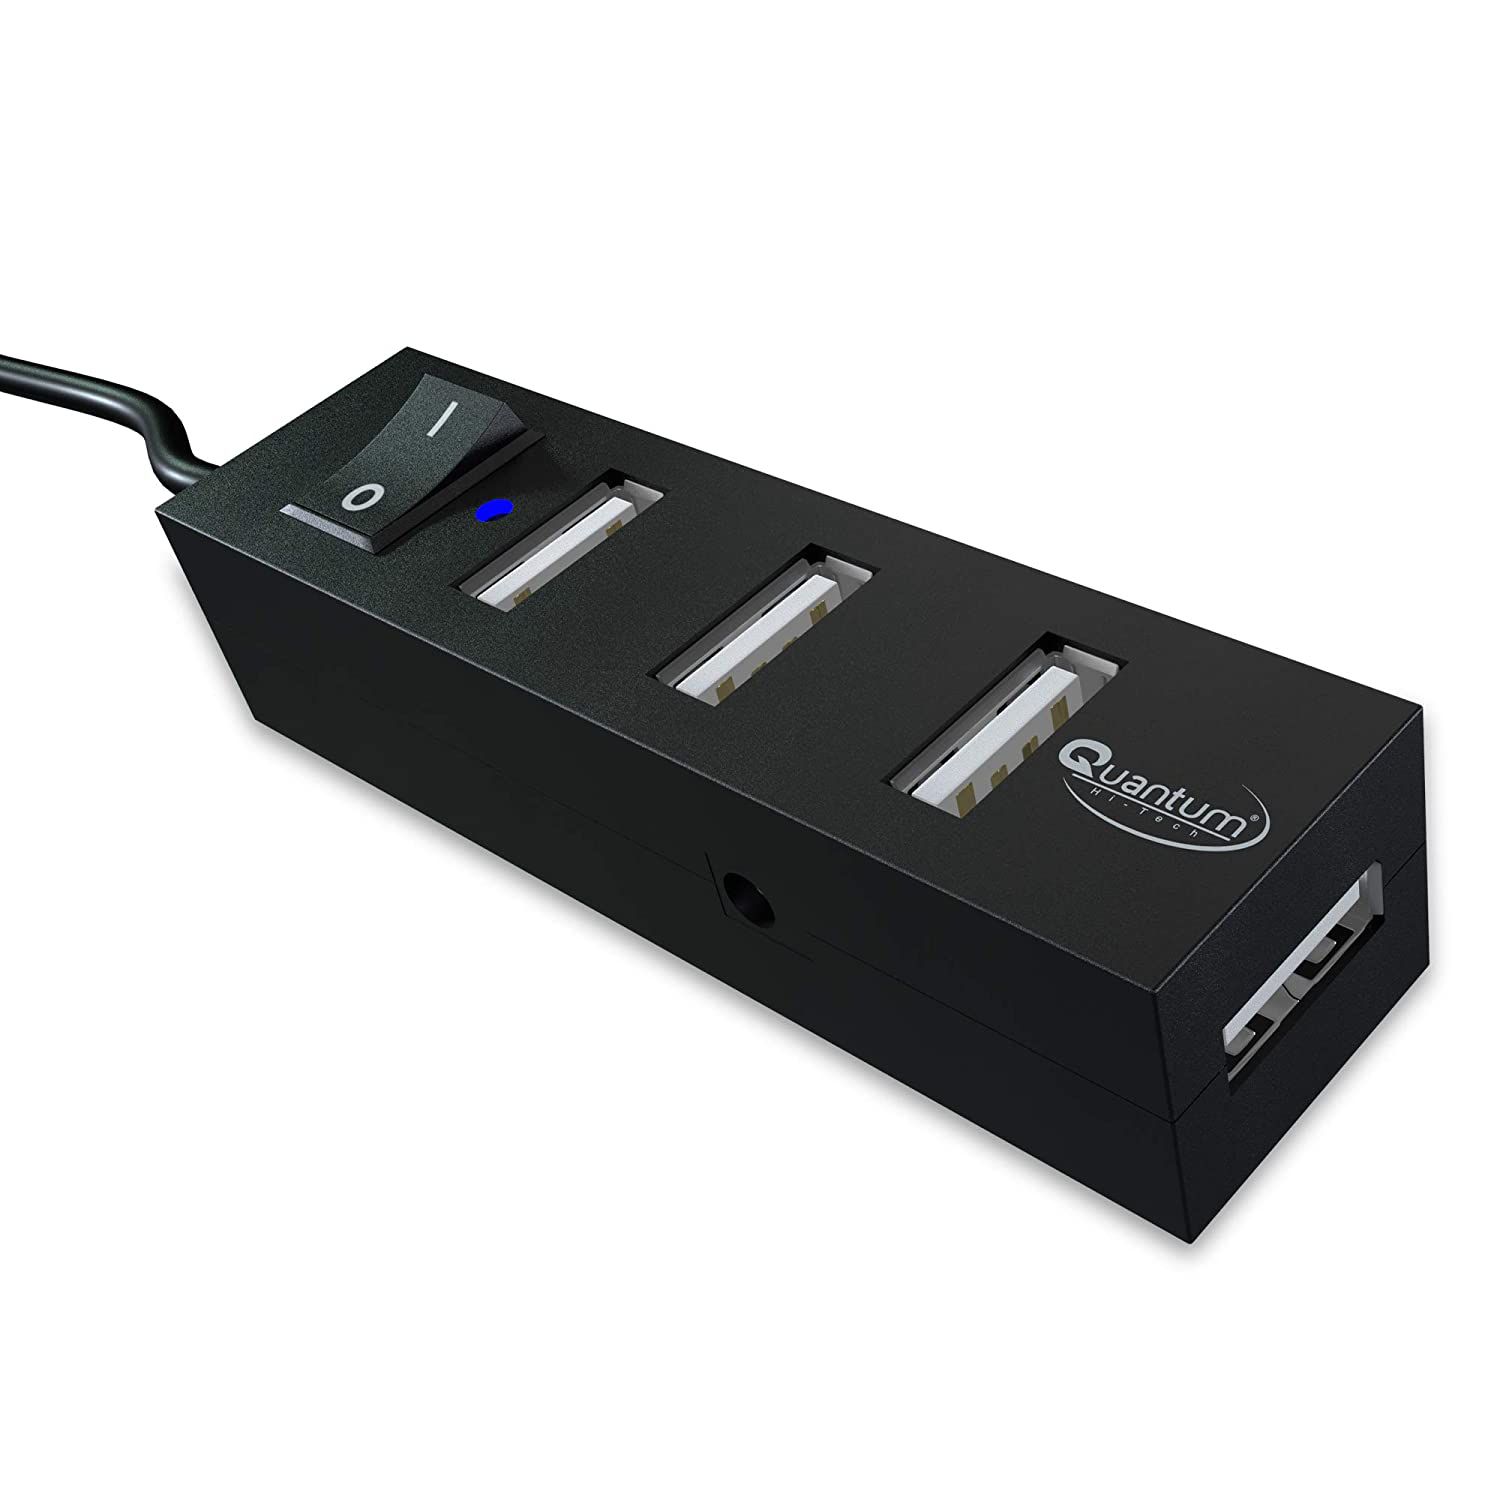 Quantum QHM6660 4 Port Hi-Speed USB Hub with Power Switch-Multicolor